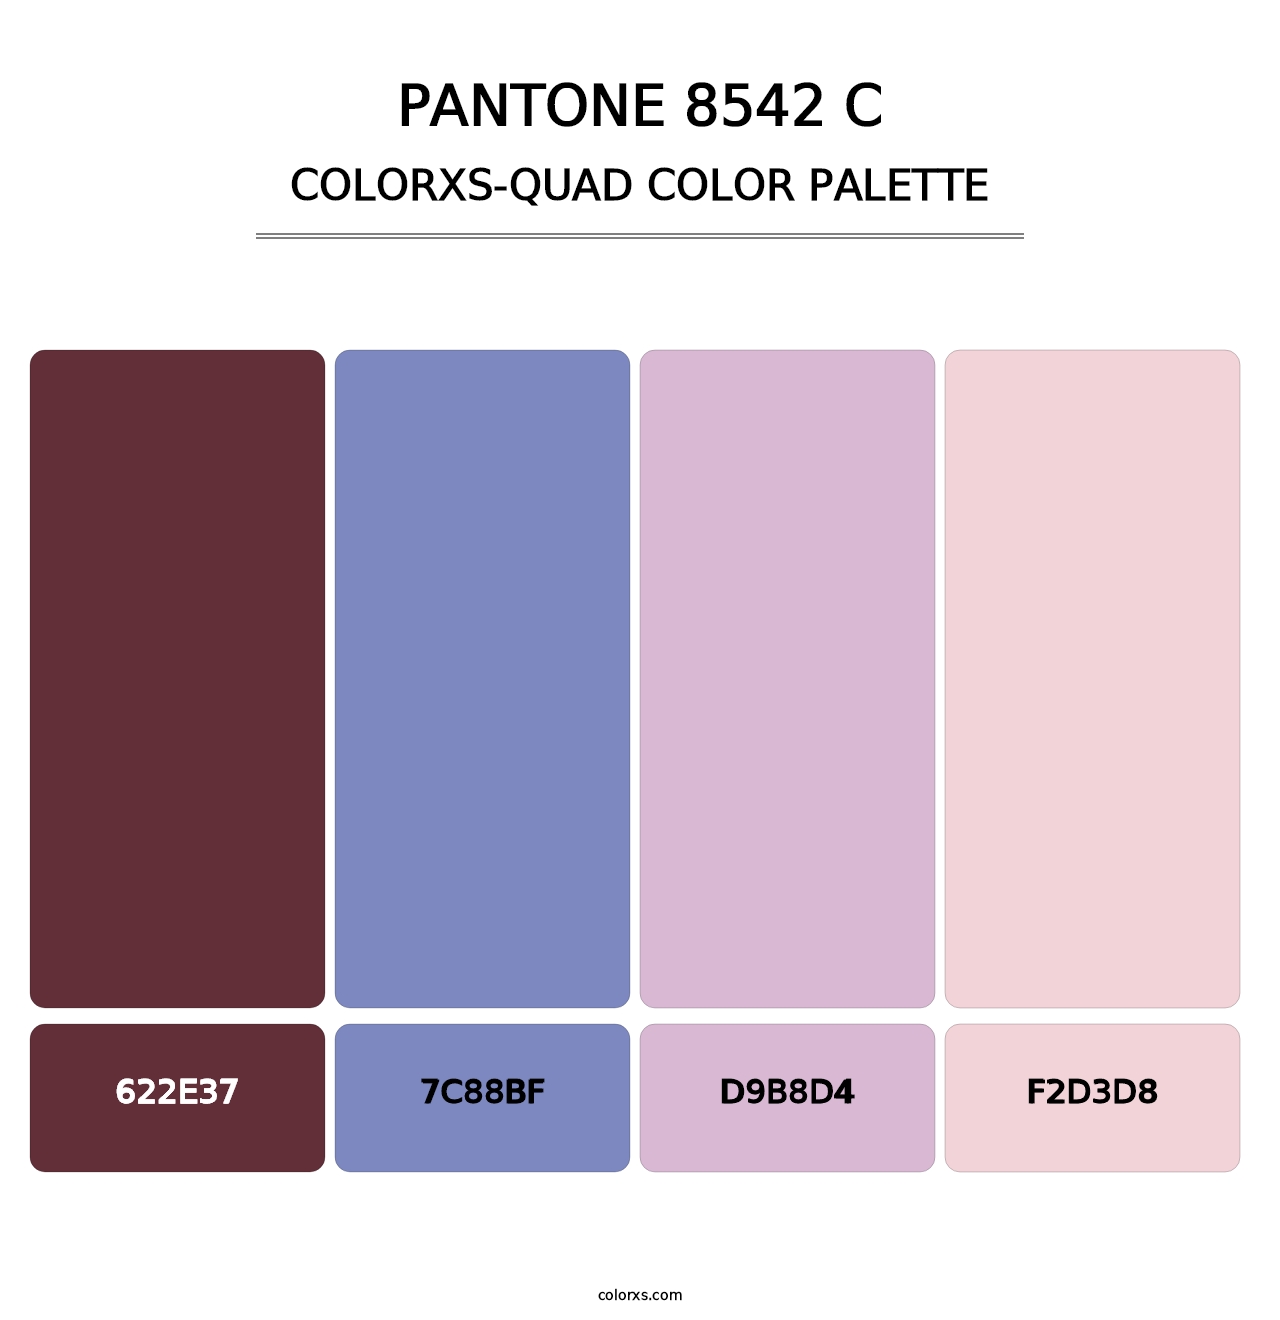 PANTONE 8542 C - Colorxs Quad Palette